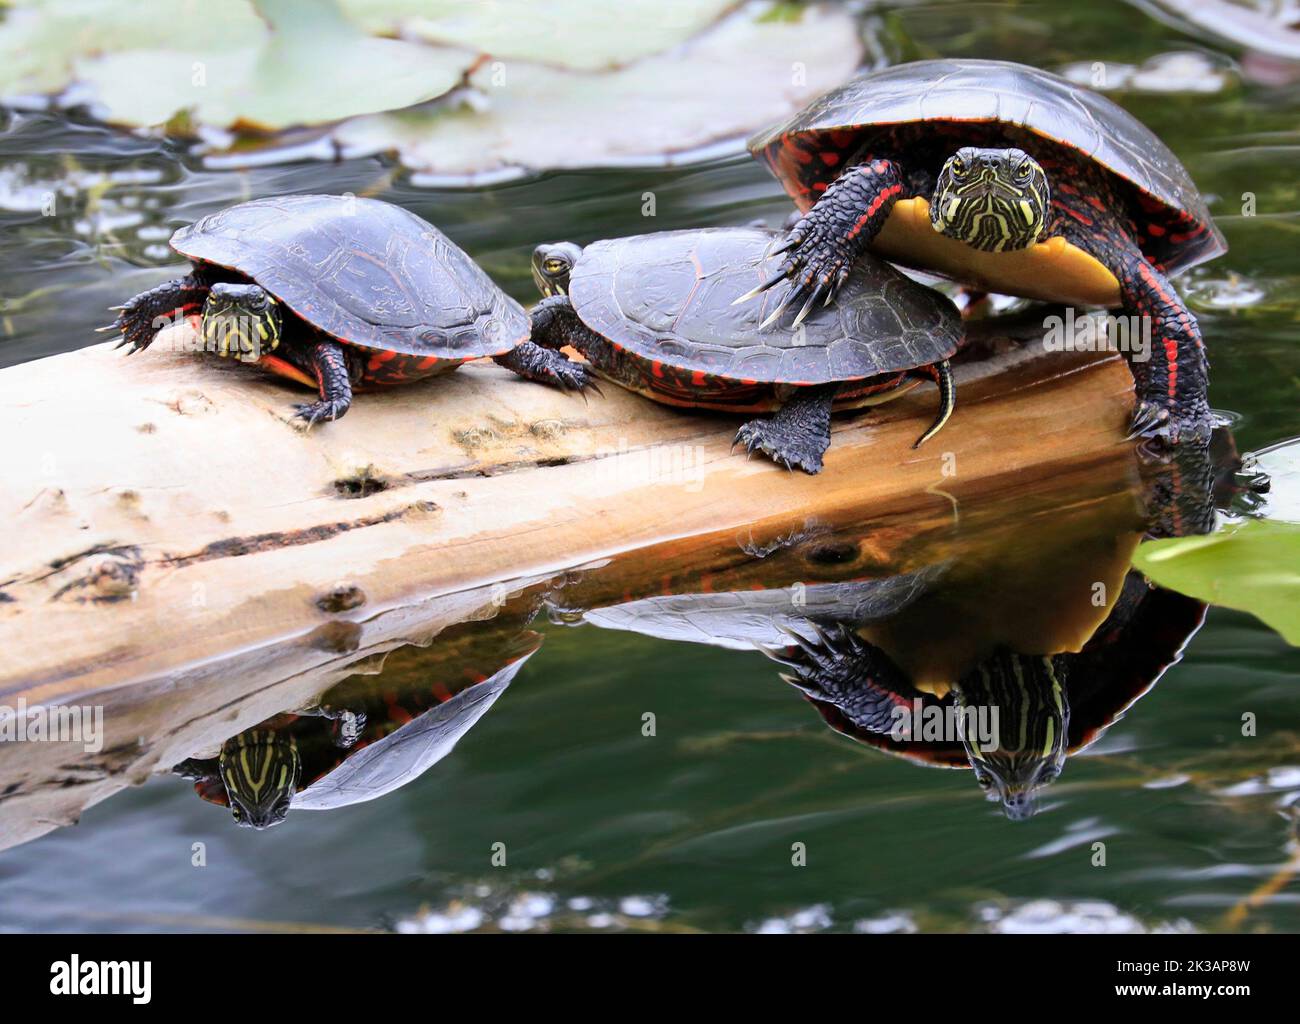 Par de Tortugas Pintadas (Chrysemys picta marginata) con su reflejo en el Agua, Montreal, Canadá Foto de stock